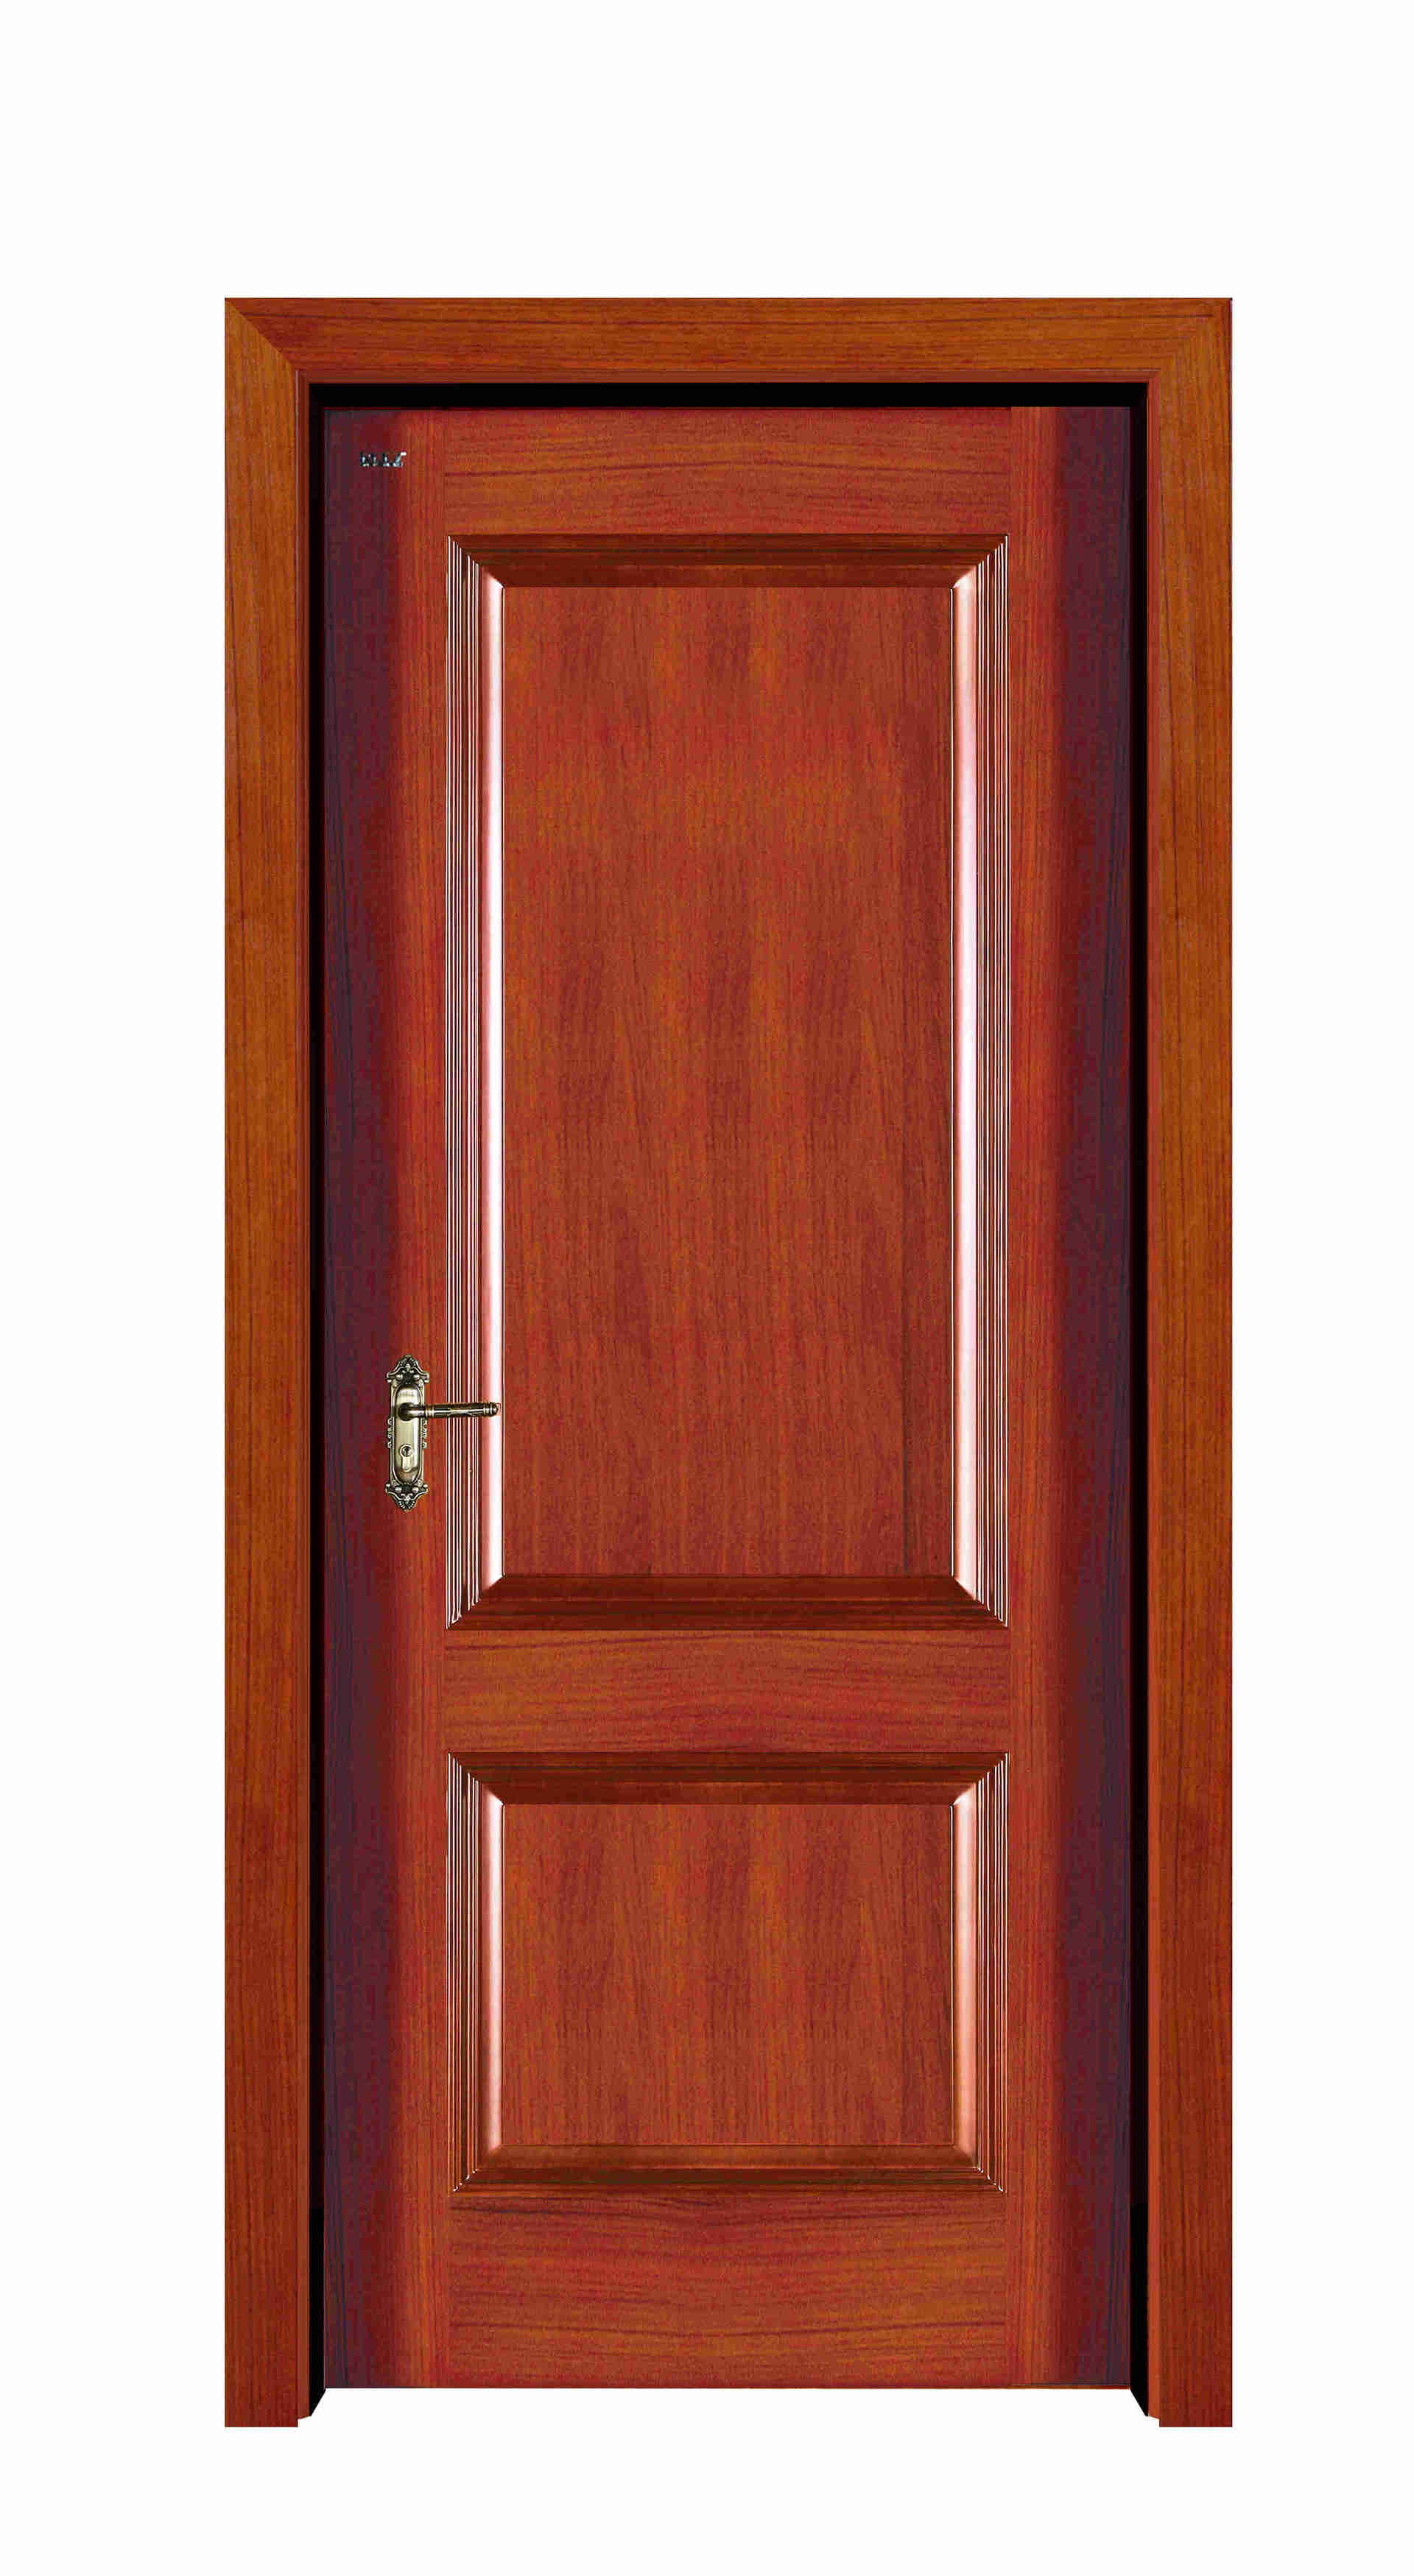 S001 Residential Interior Solid Wooden Door